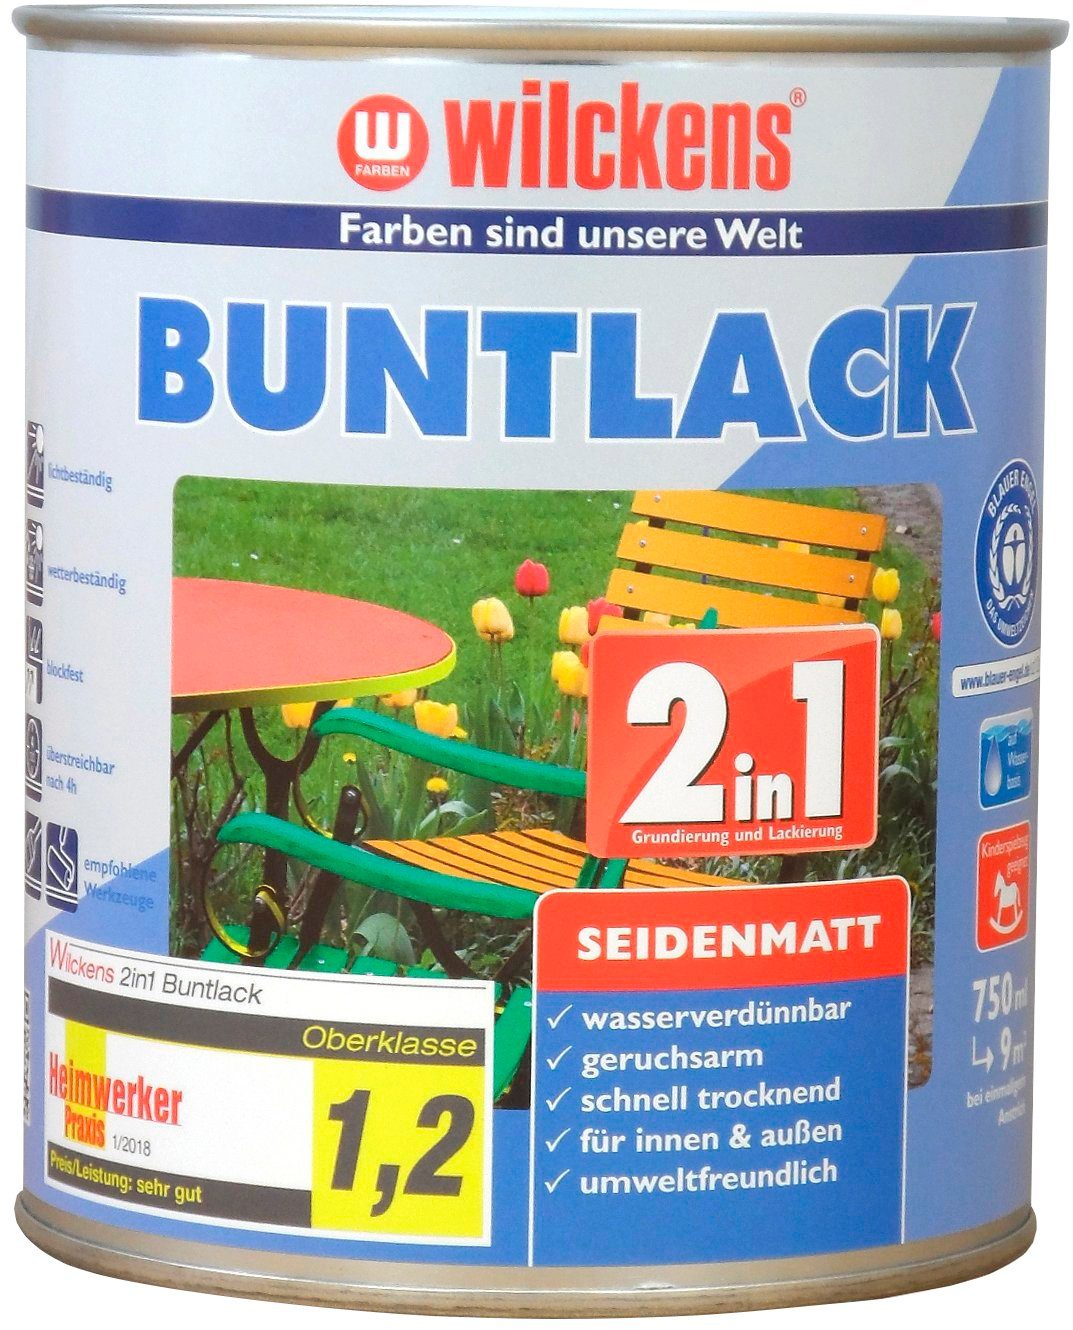 Wilckens Farben Holzlack 2in1 Buntlack seidenmatt, umweltfreundlich RAL 7035 Lichtgrau seidenmatt